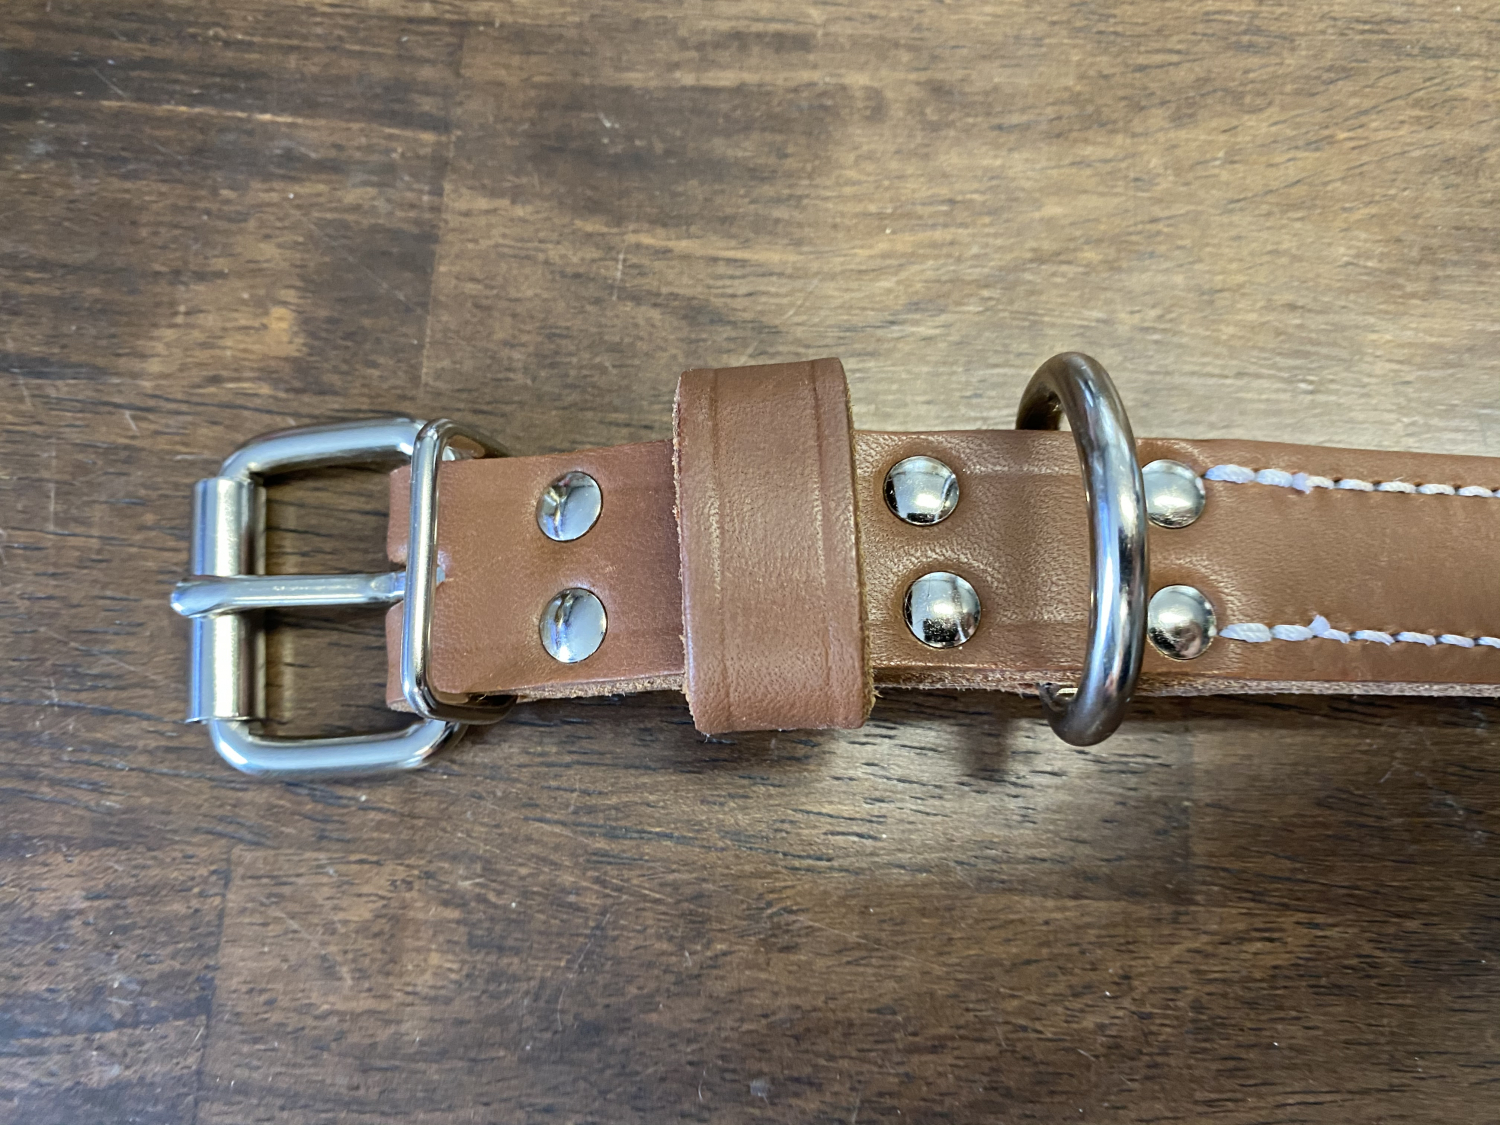 1 in. Gun Dog Deluxe Leather Standard Dog Collar. $13.99.